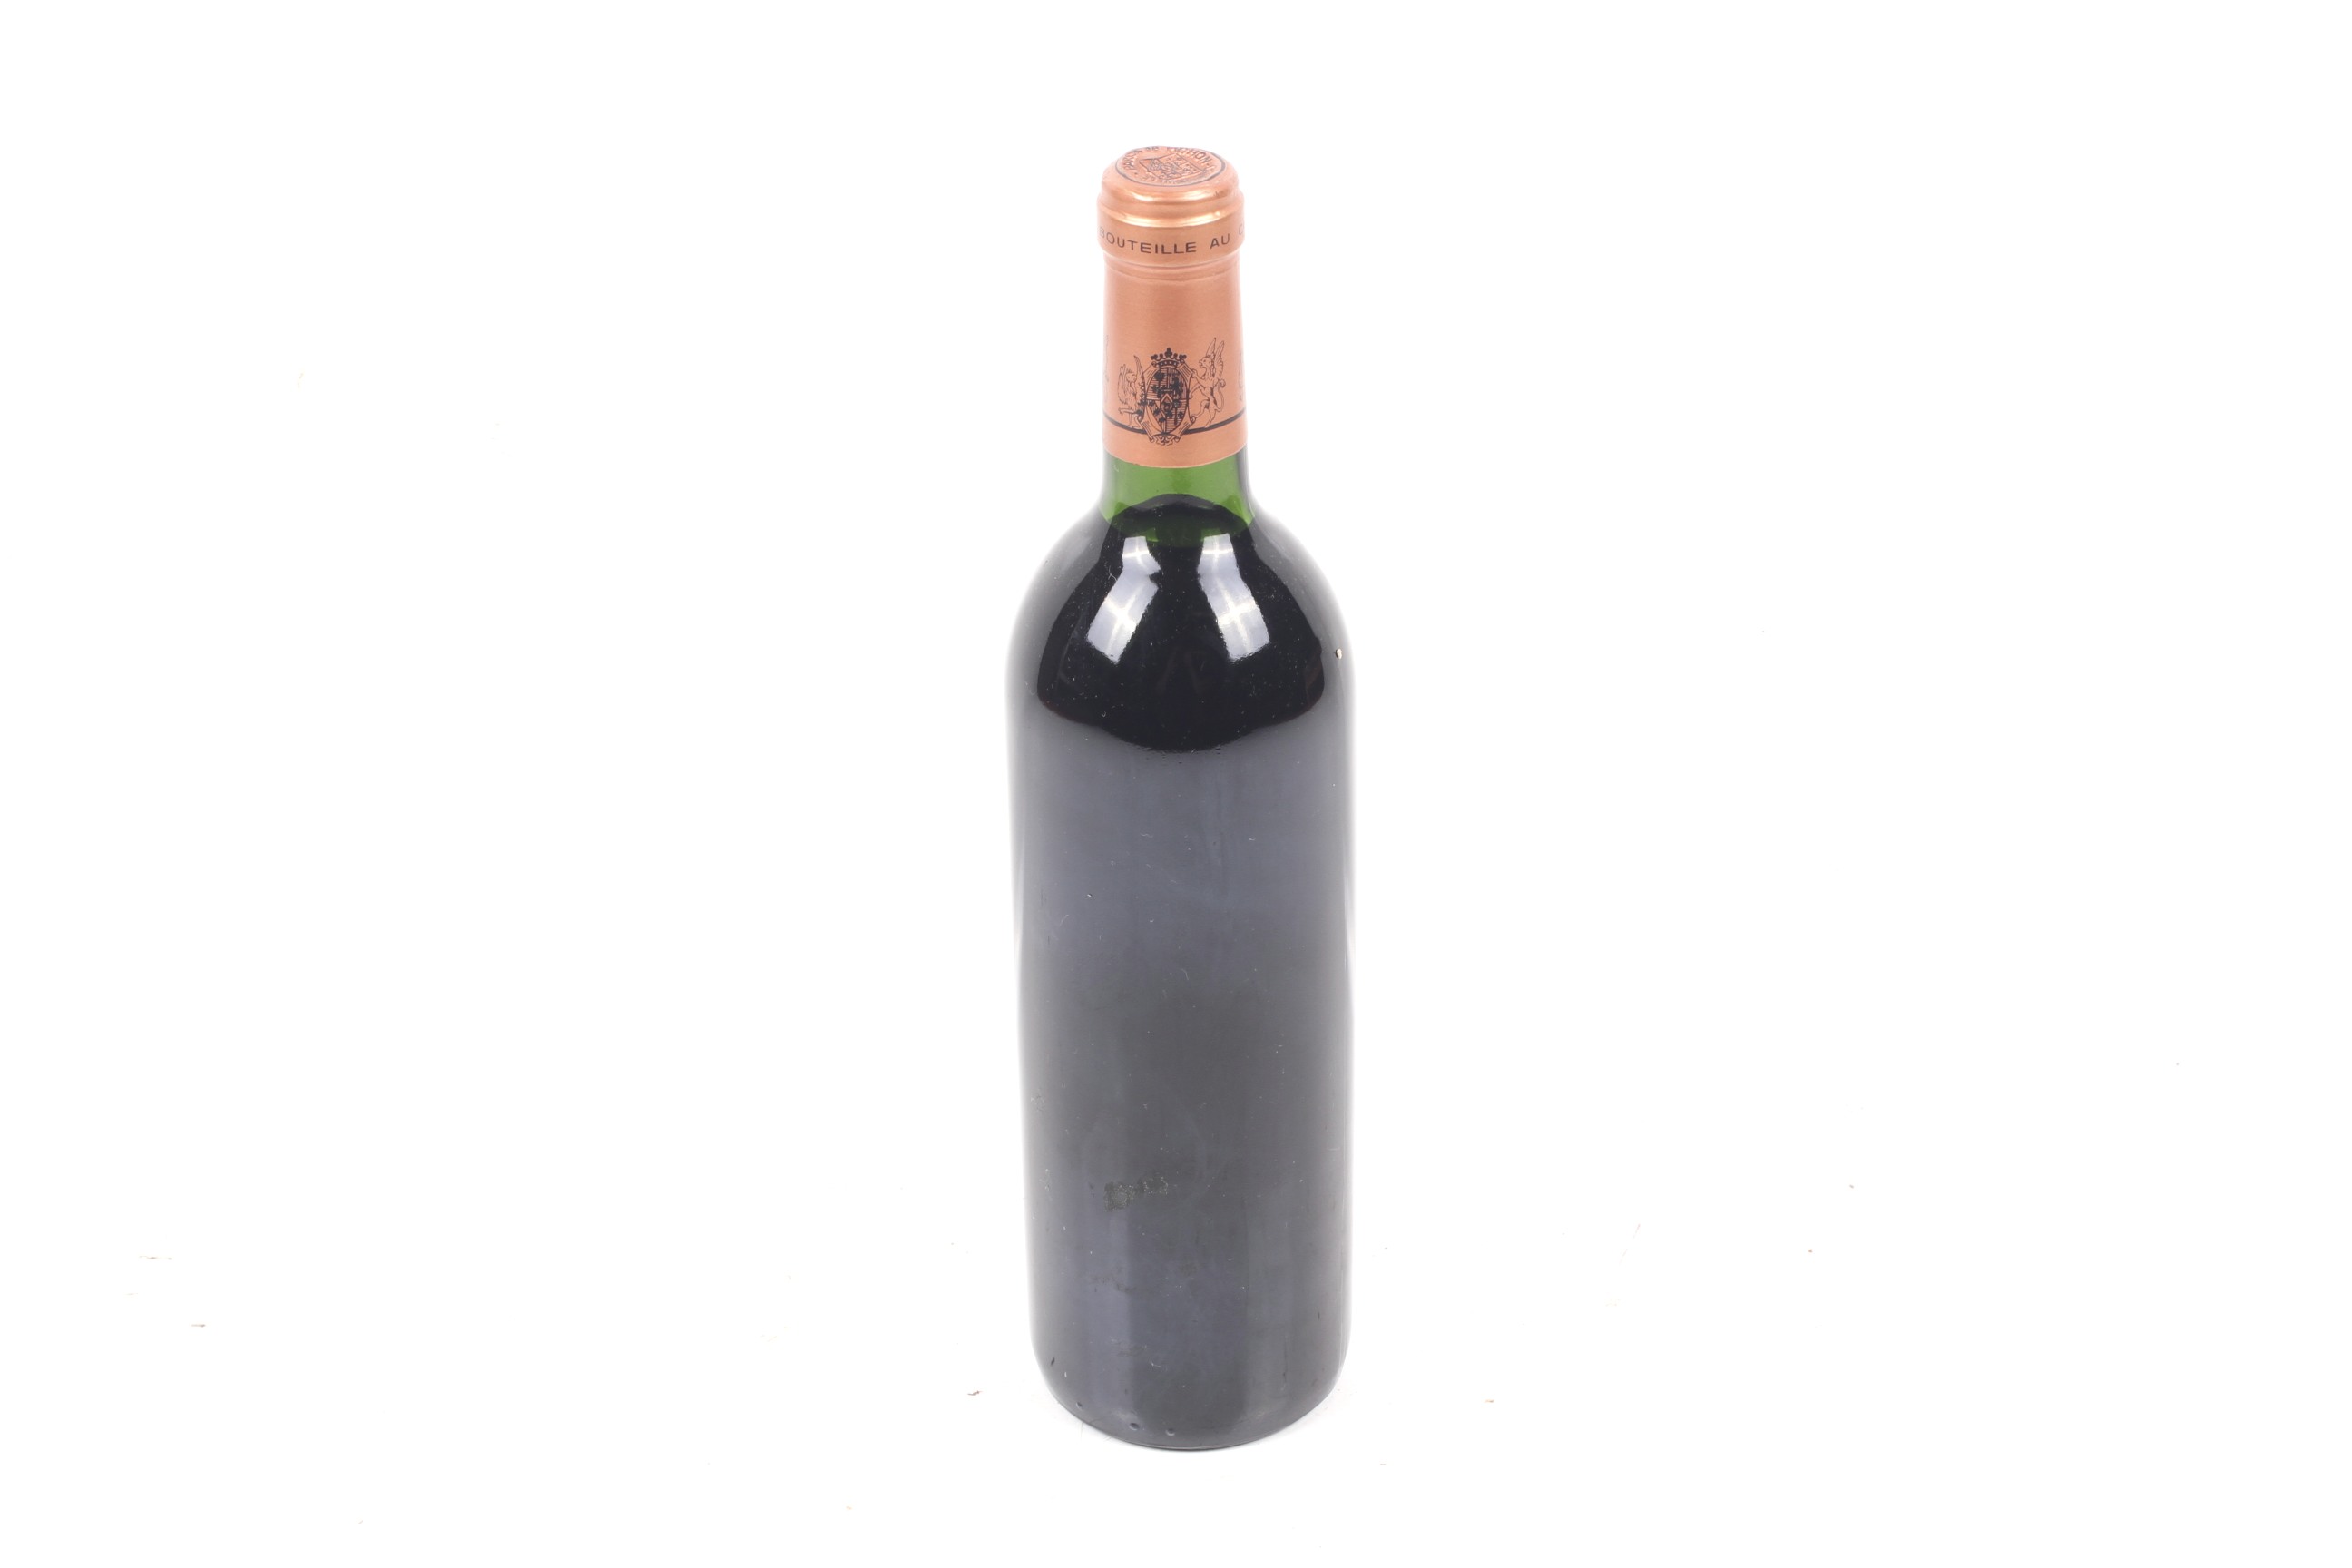 A bottle of Chateau longueville baron de pichon 1986. 75cl, 12.5% vol. - Image 2 of 2